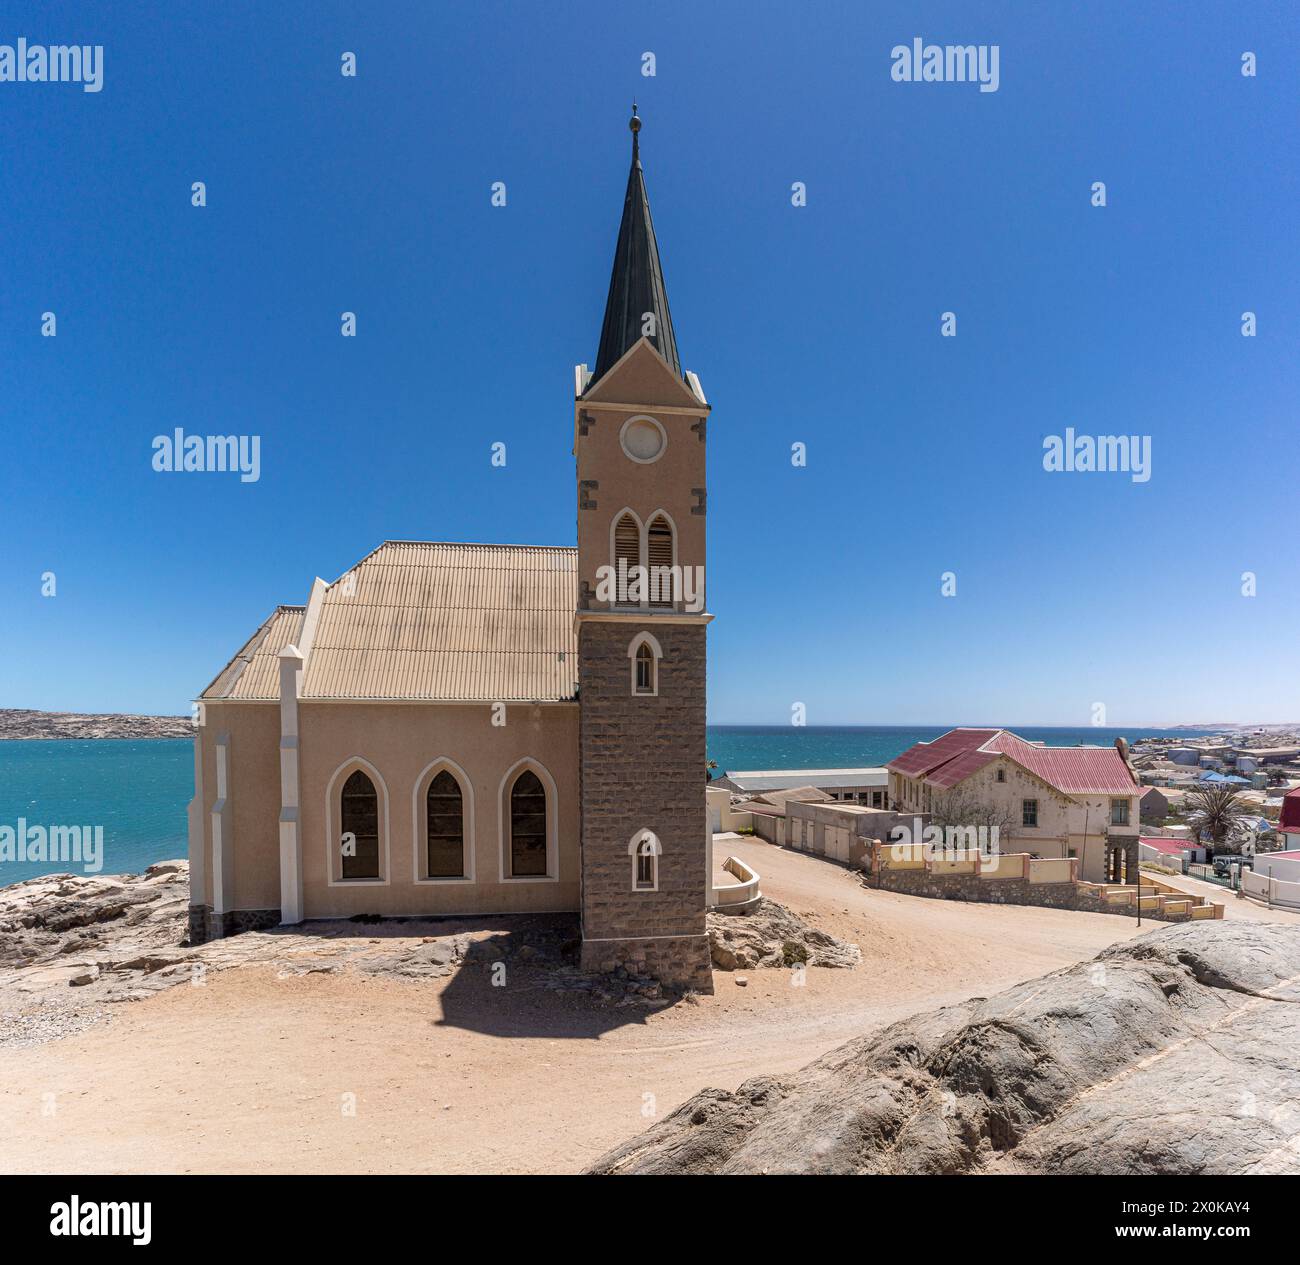 Lüderitz, namibische Hafenstadt in der Lüderitz-Bucht am östlichen Südatlantik Stockfoto